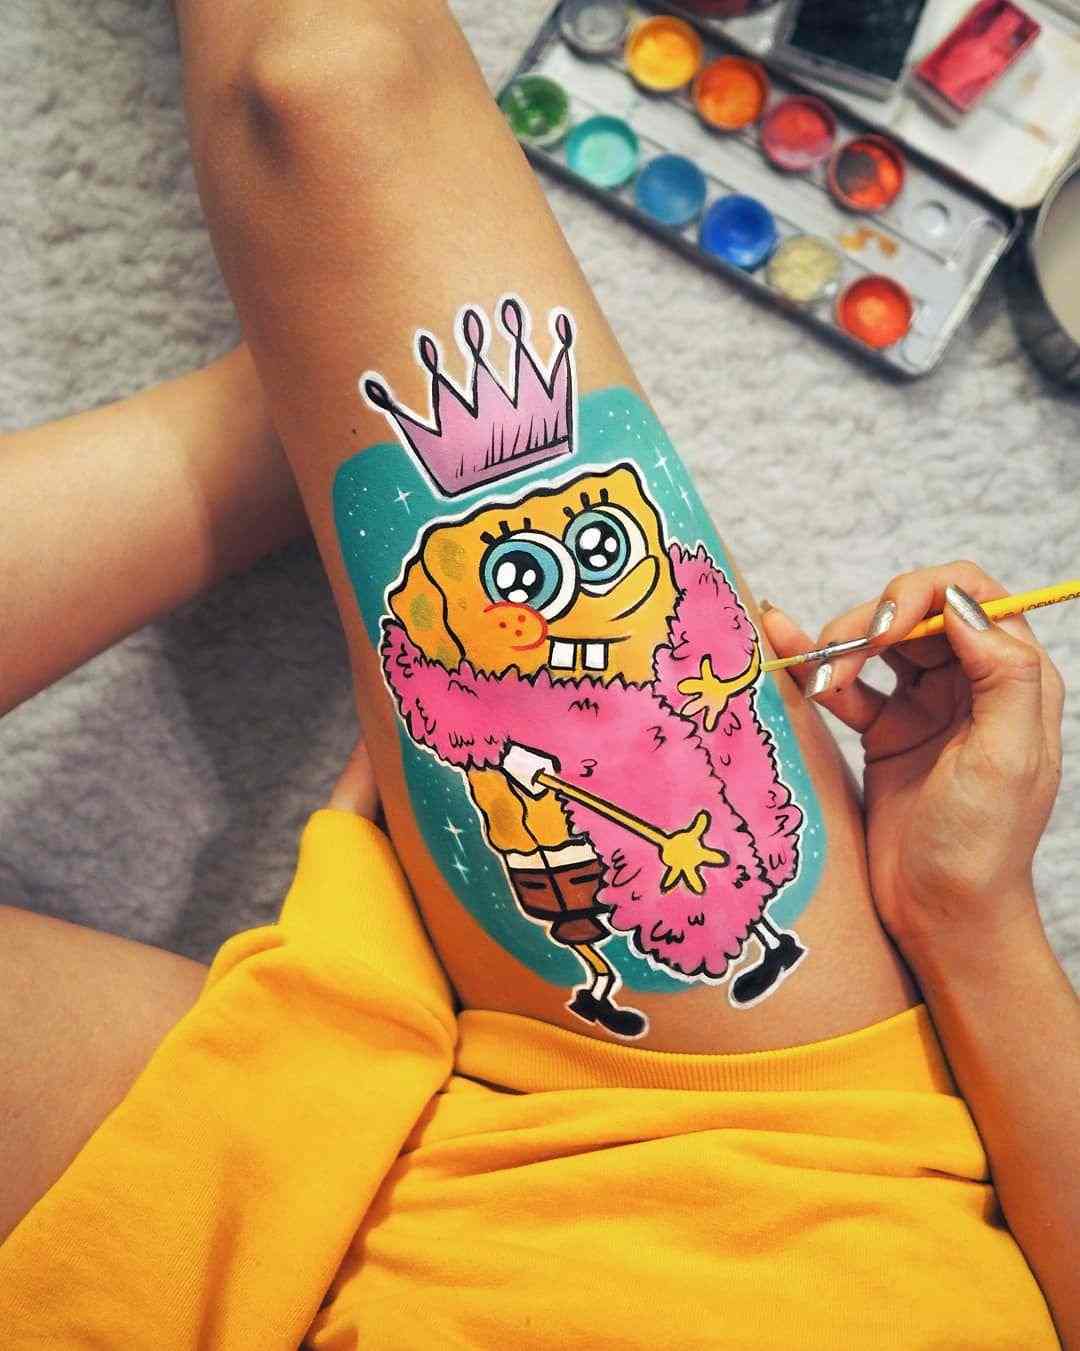 Body Art Ben Lår Tatuering Trender Svampbob Tattoo Design Kvinnor